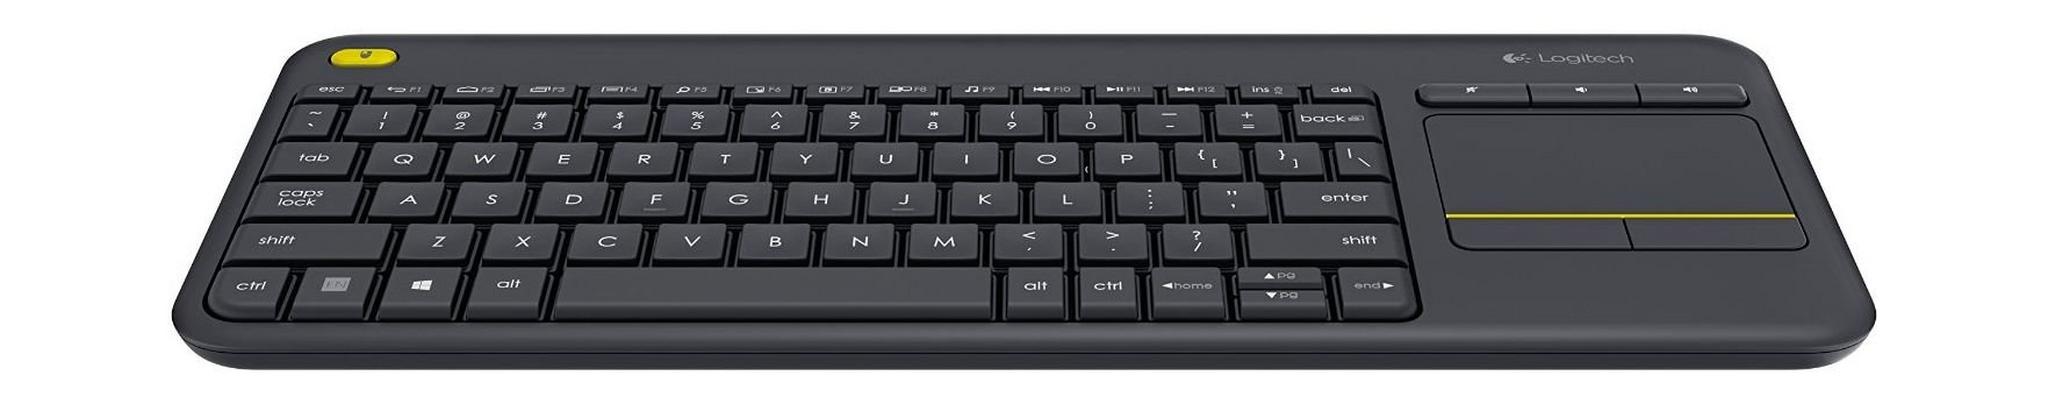 لوحة مفاتيح لاسلكية تعمل باللمس (تقنية الكل في واحد) من لوجيتيك ـ أسود ـ K400 Plus